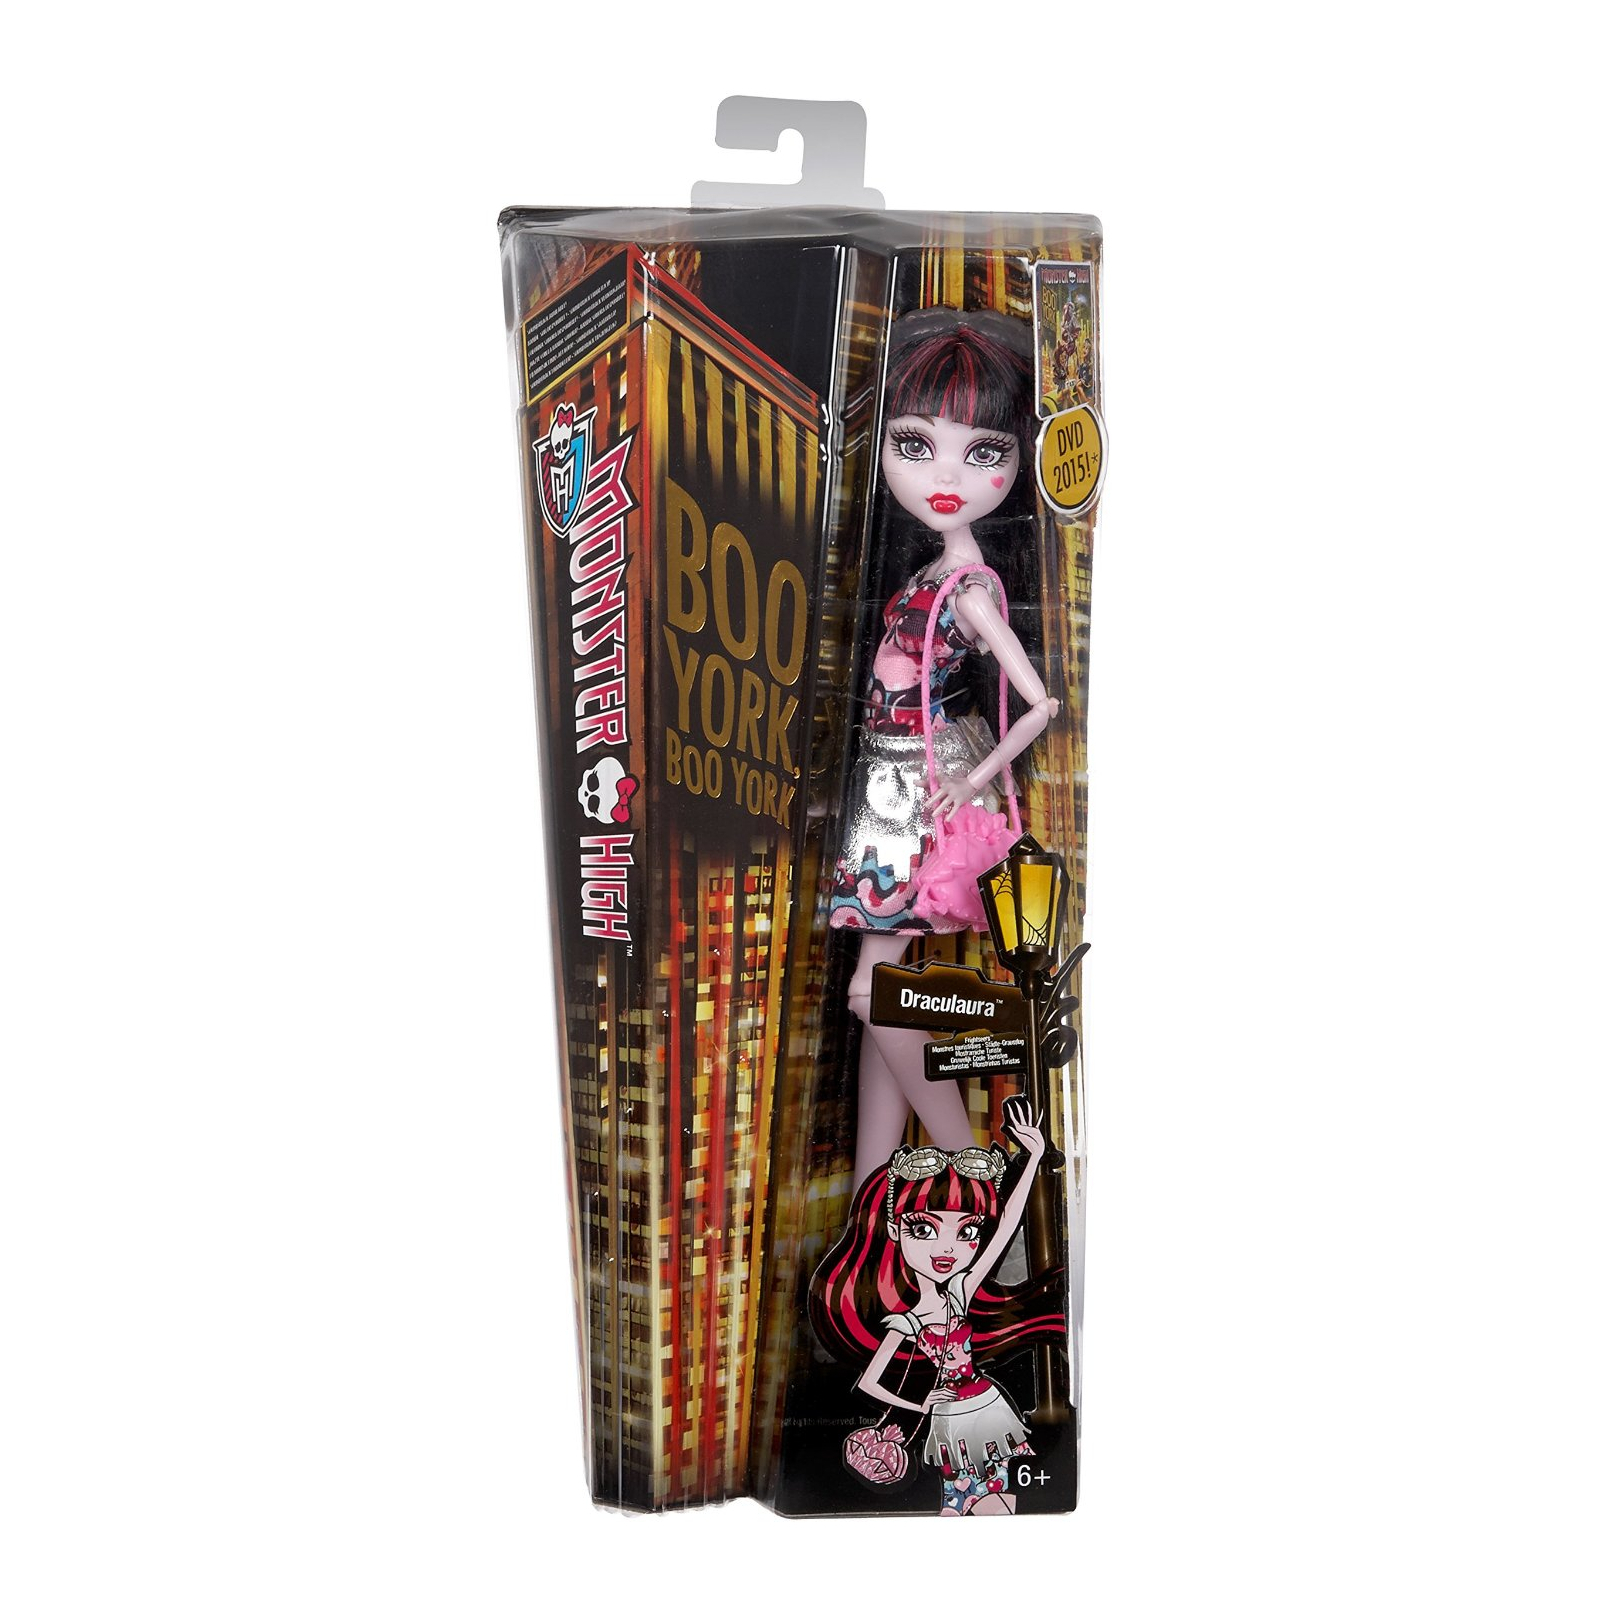 Кукла Monster High Дракулора серии Монстуристы из м/ф Буу-Йорк (CHW57-2) изображение 6